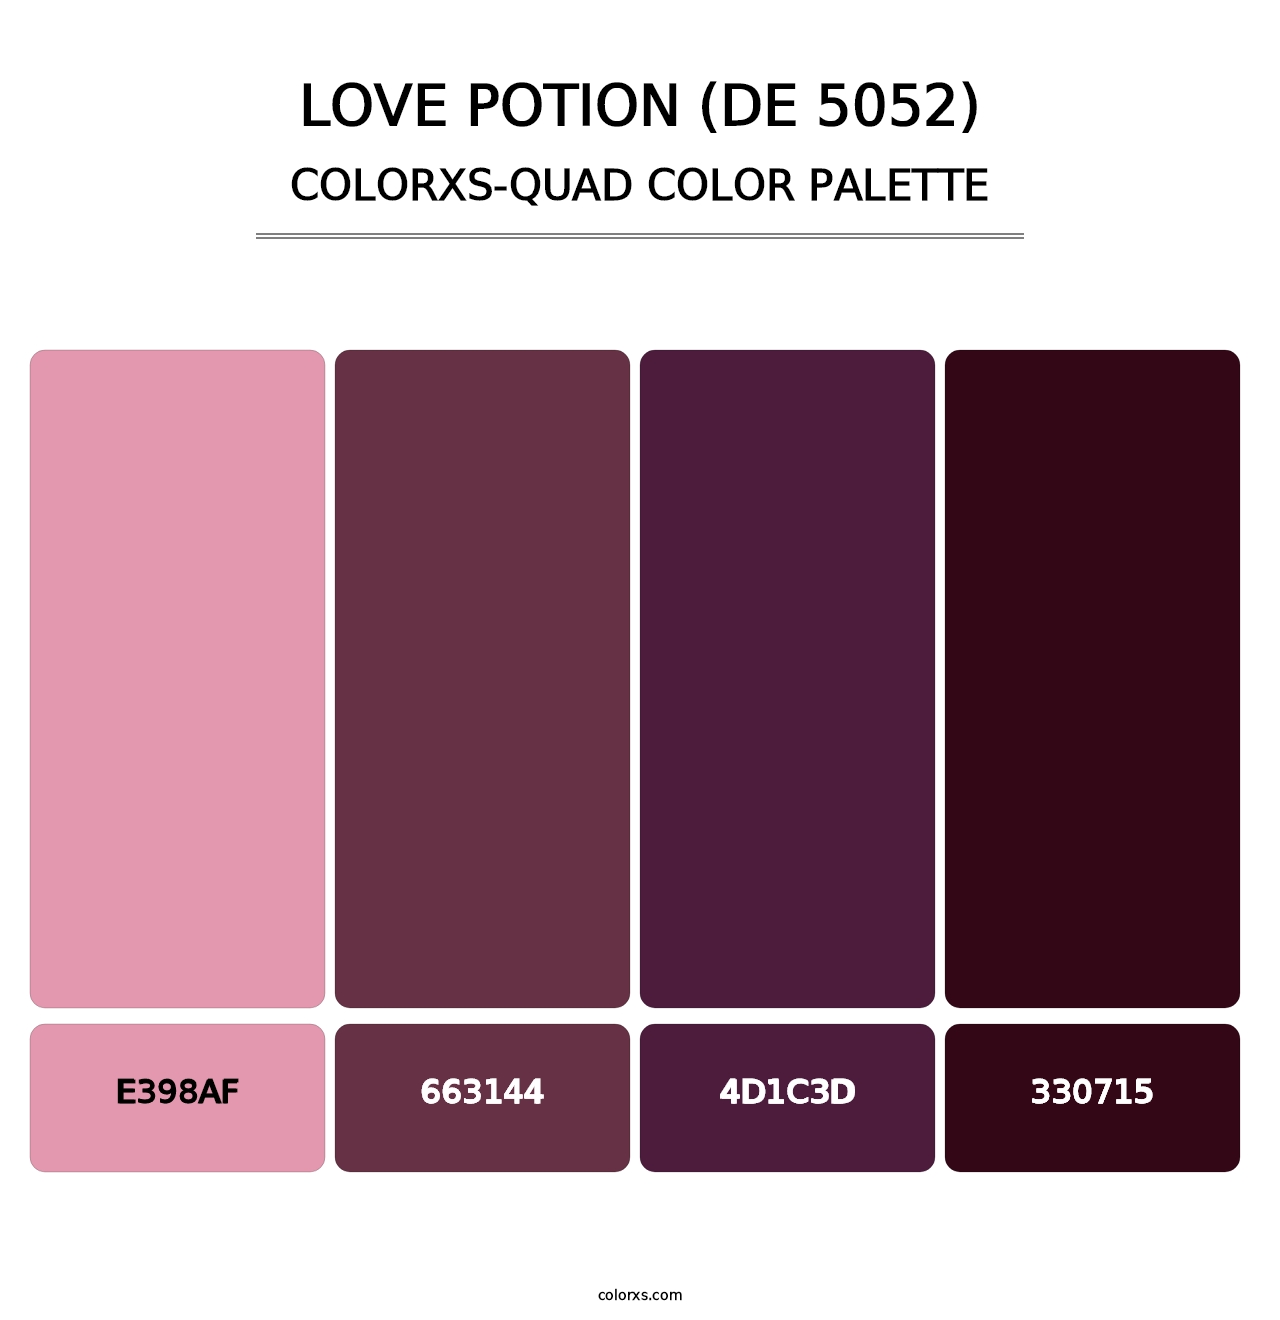 Love Potion (DE 5052) - Colorxs Quad Palette